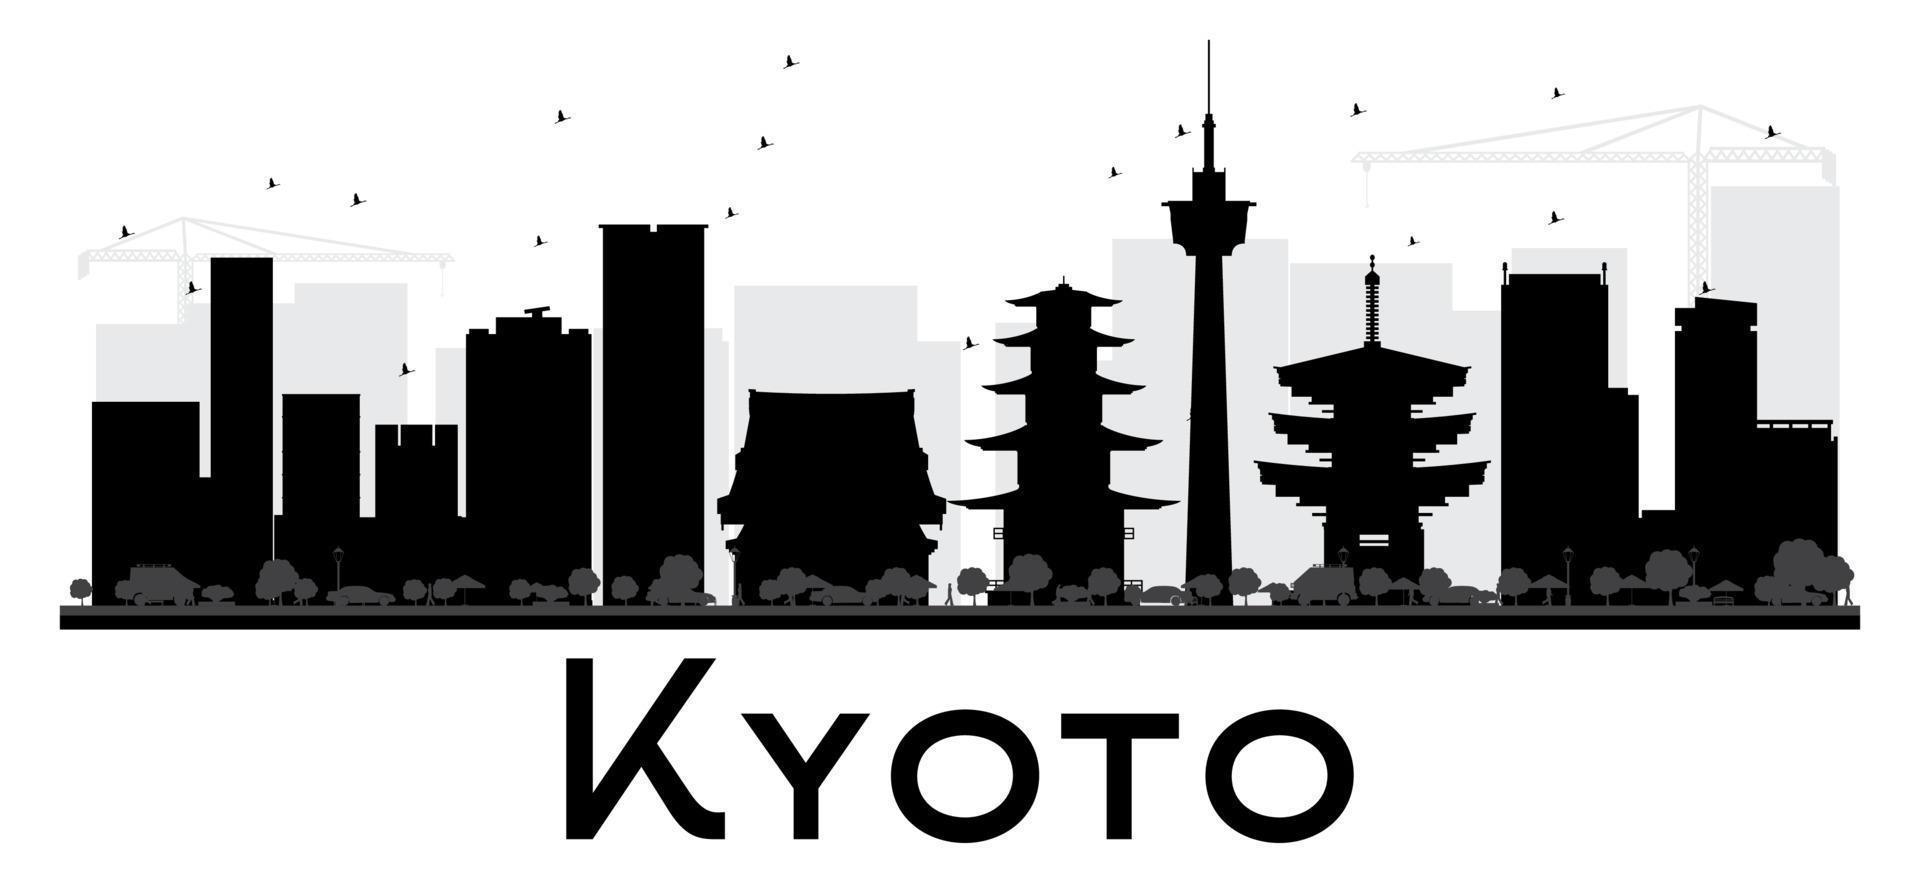 Silueta en blanco y negro del horizonte de la ciudad de Kioto. vector